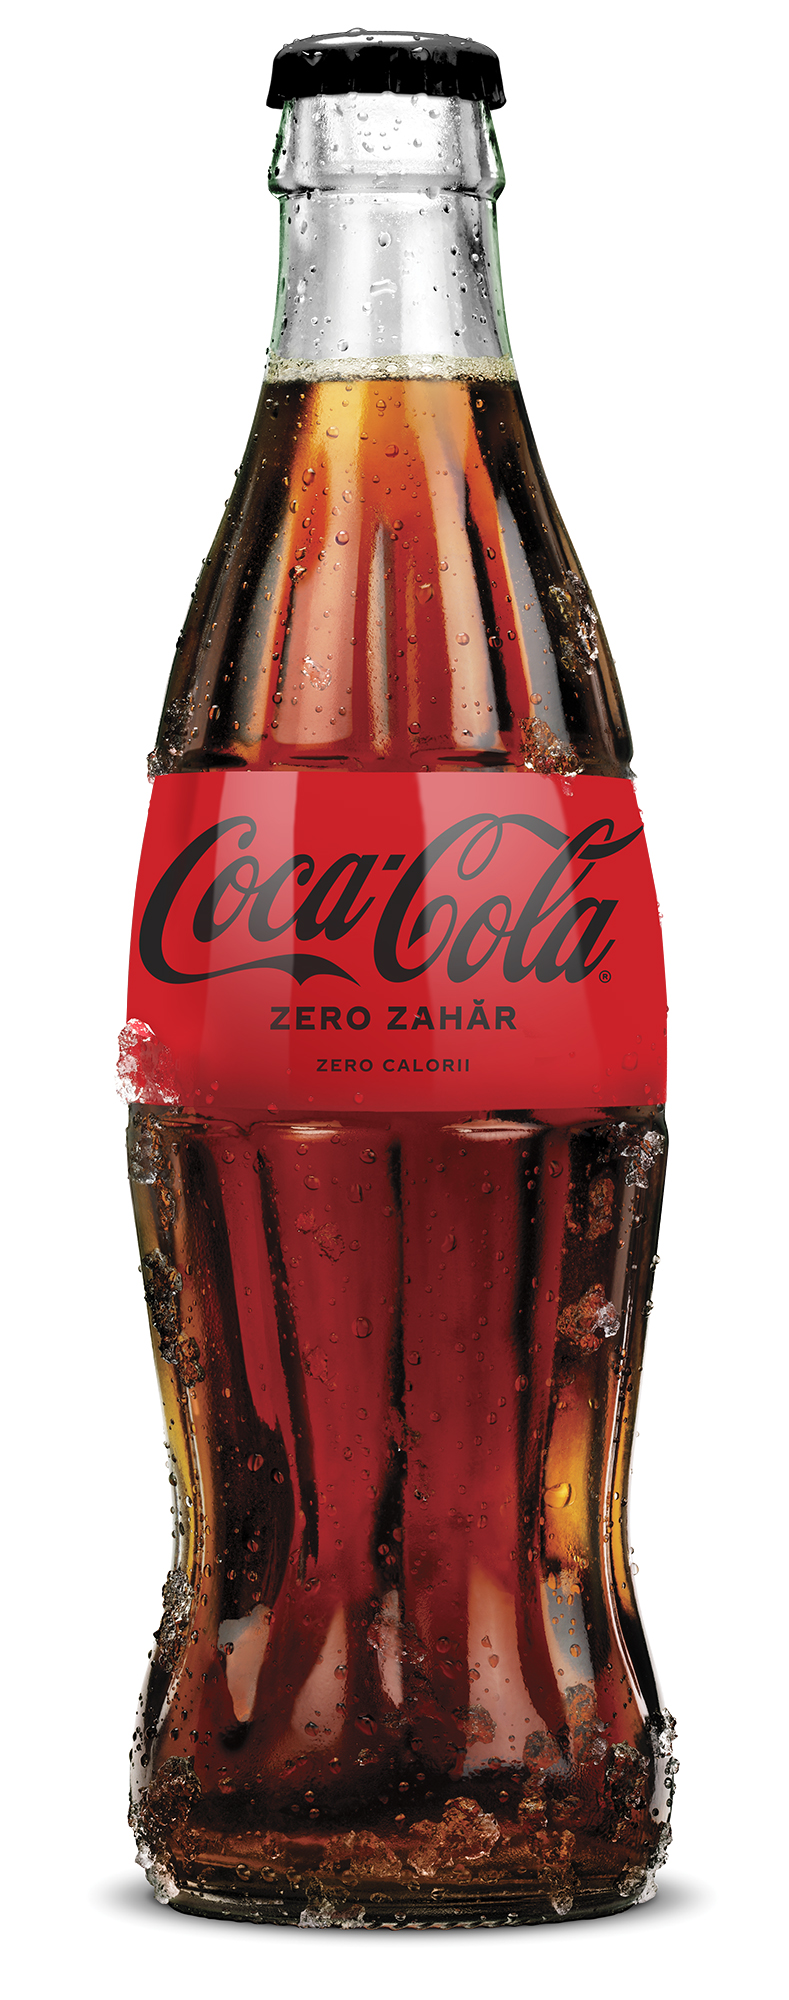 Coca-Cola ZERO ZAHAR